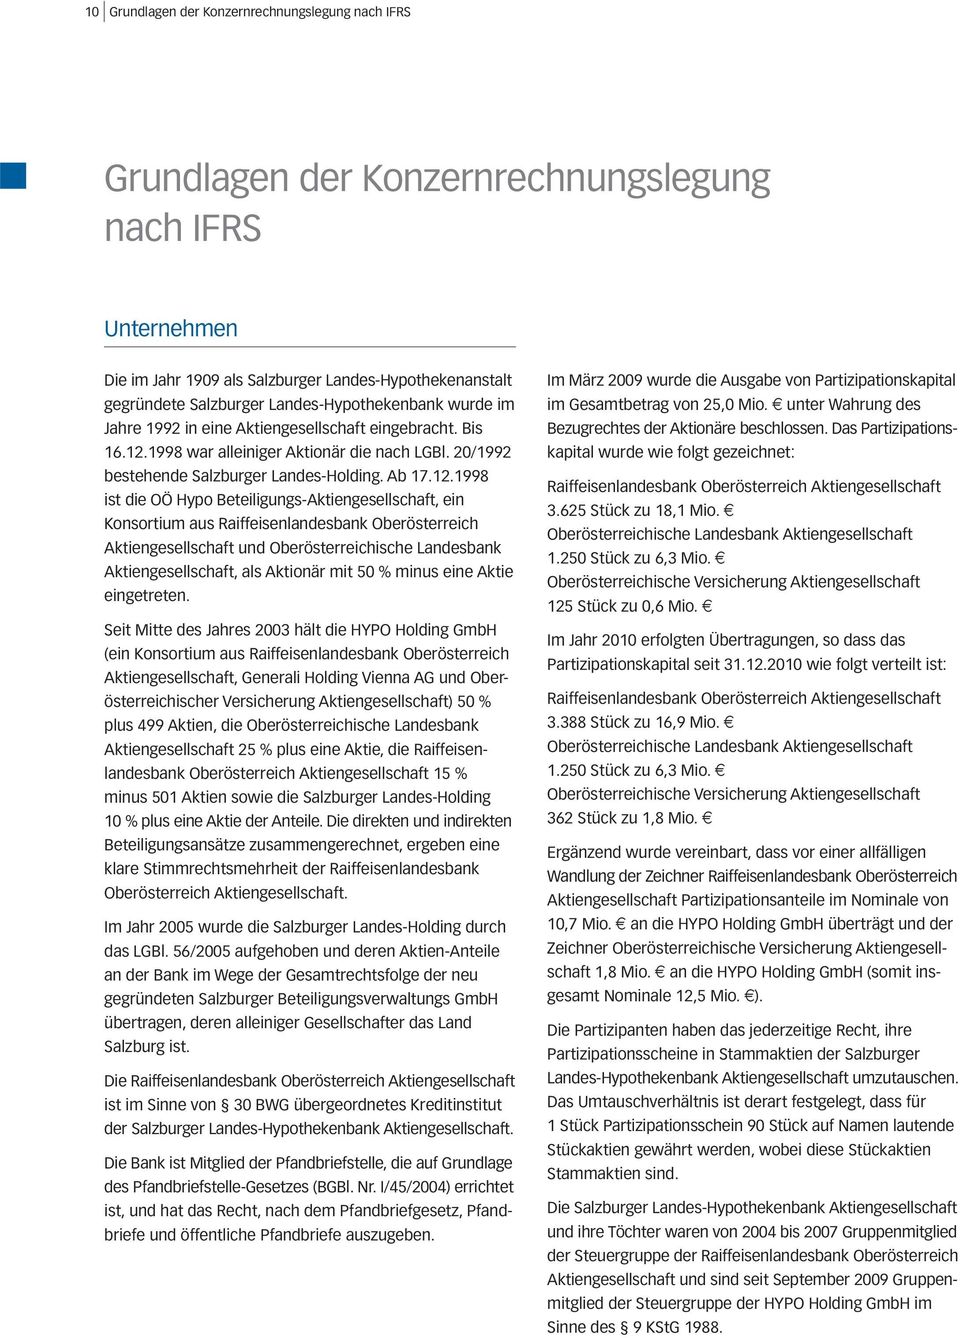 1998 war alleiniger Aktionär die nach LGBl. 20/1992 bestehende Salzburger Landes-Holding. Ab 17.12.